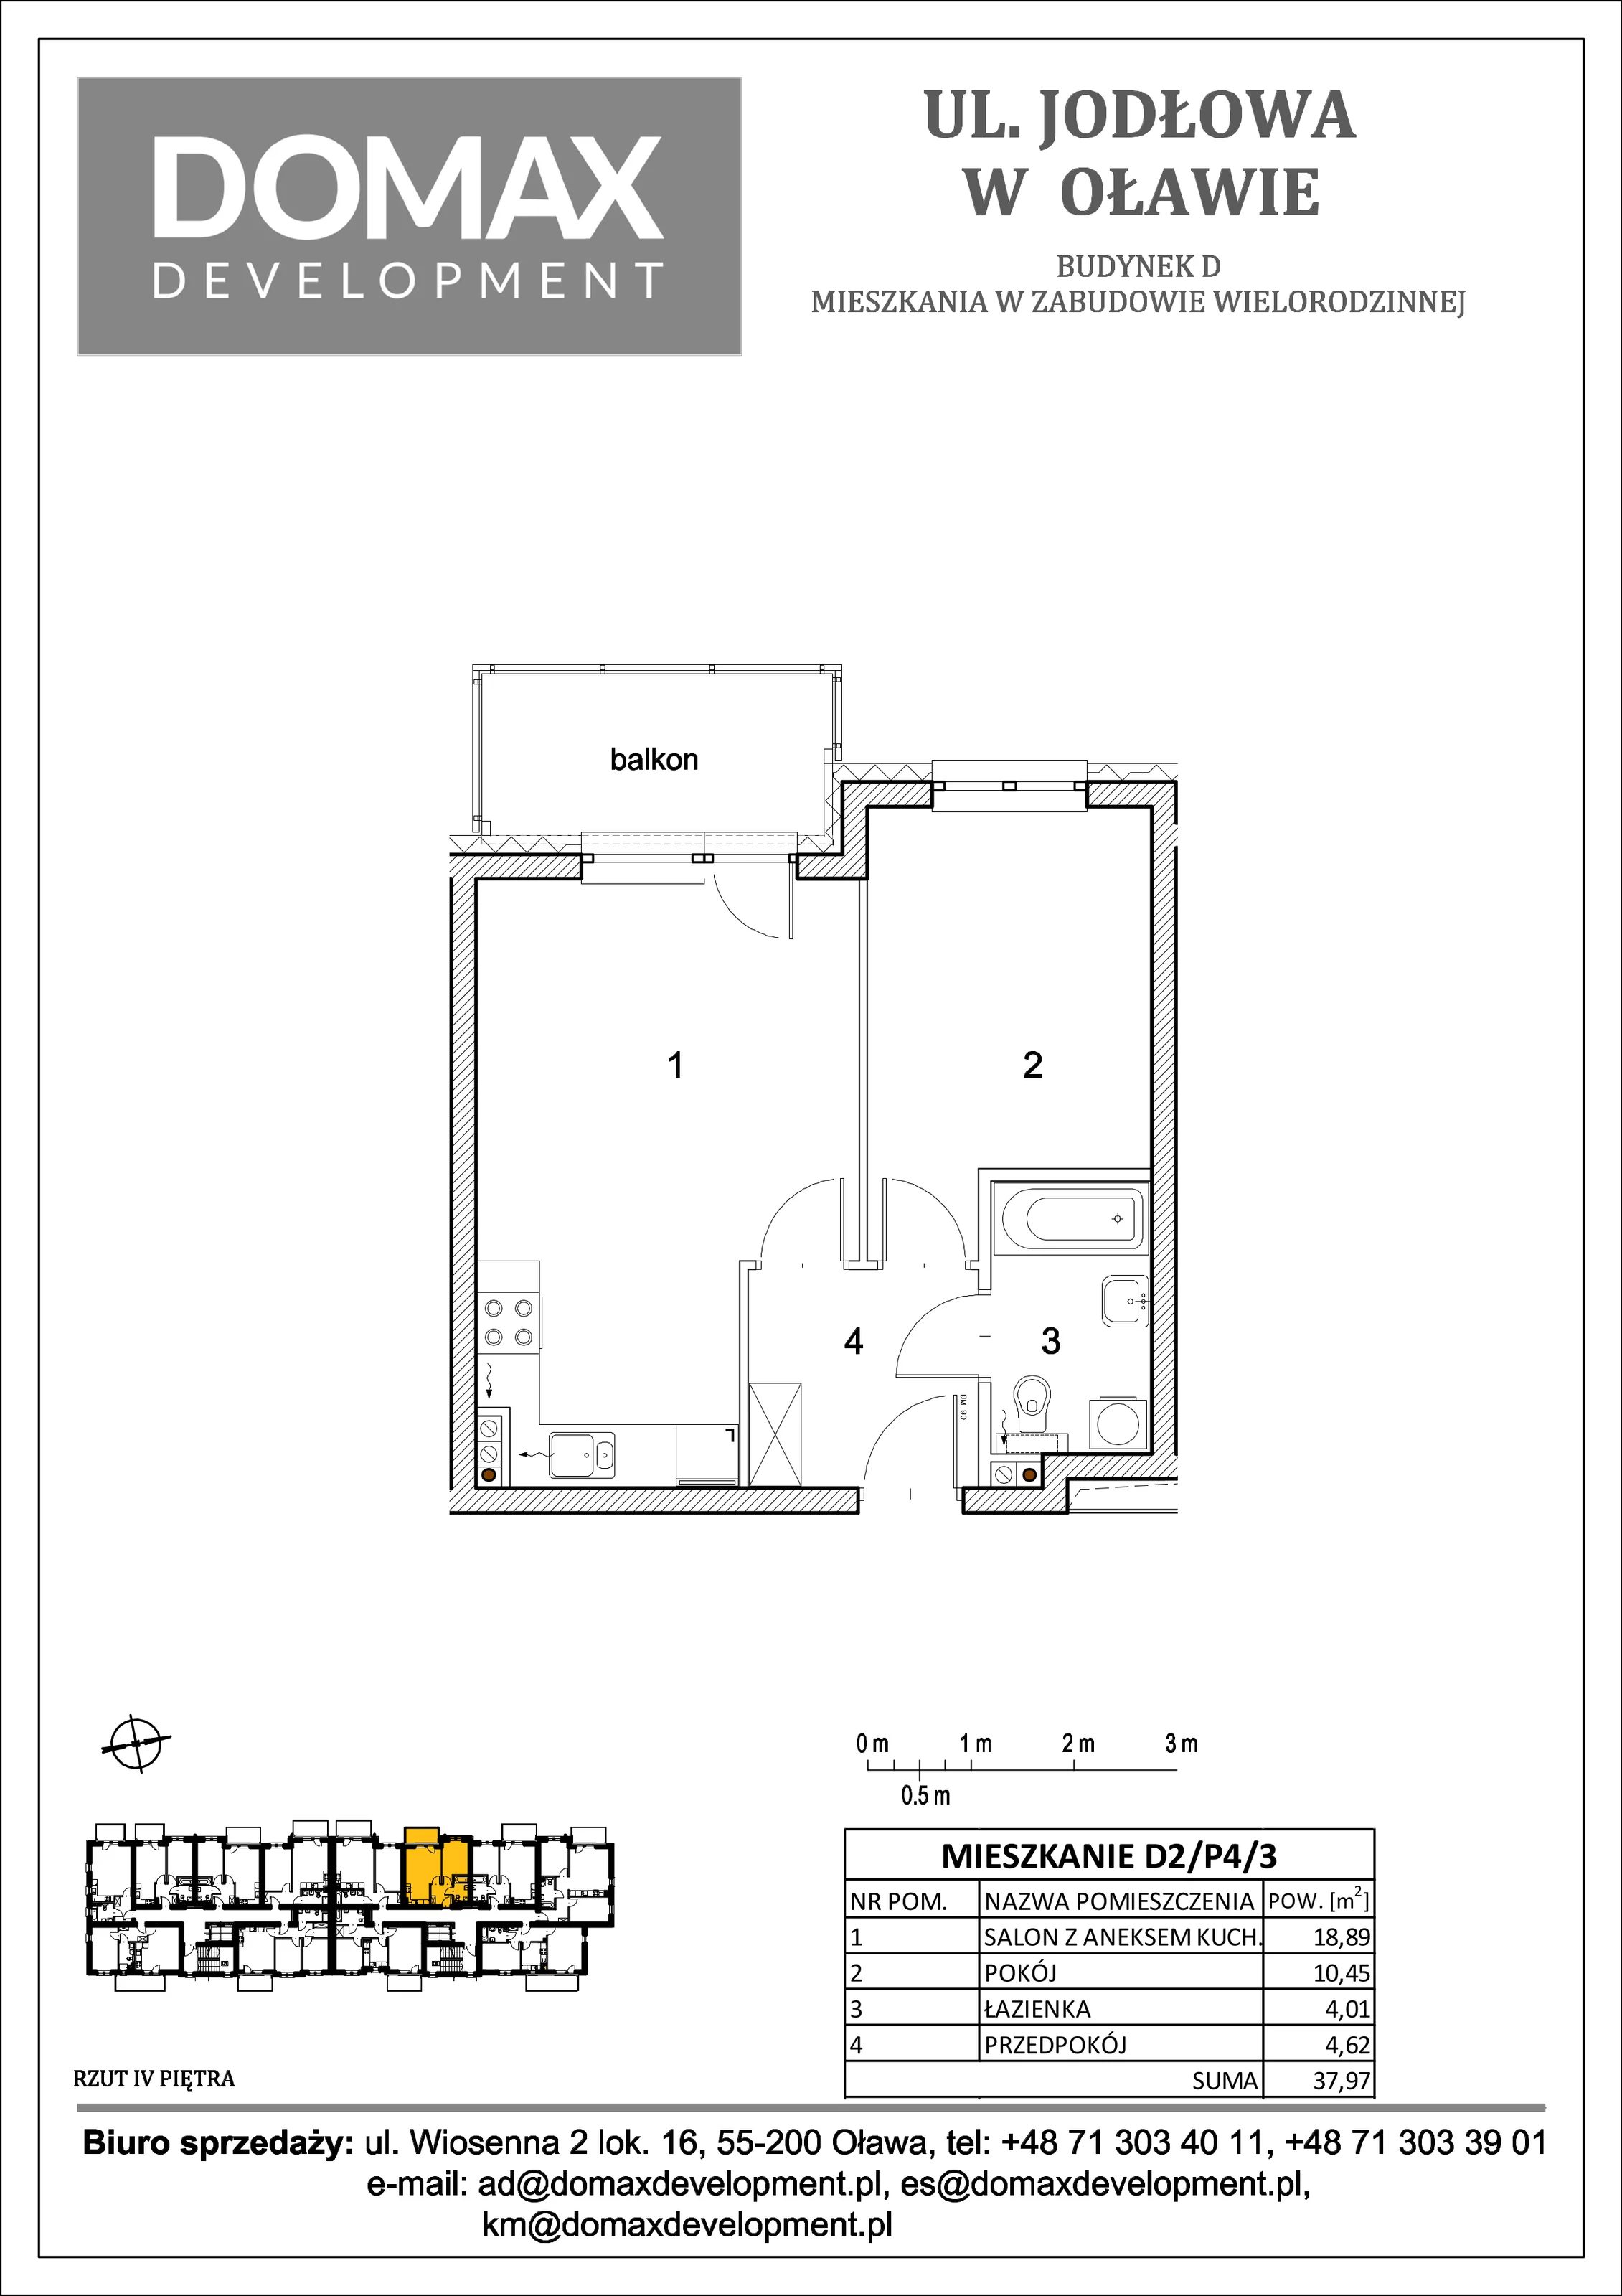 Mieszkanie 37,97 m², piętro 4, oferta nr D2/P4/3, Osiedle Jodłowa etap II, Oława, ul. Jodłowa